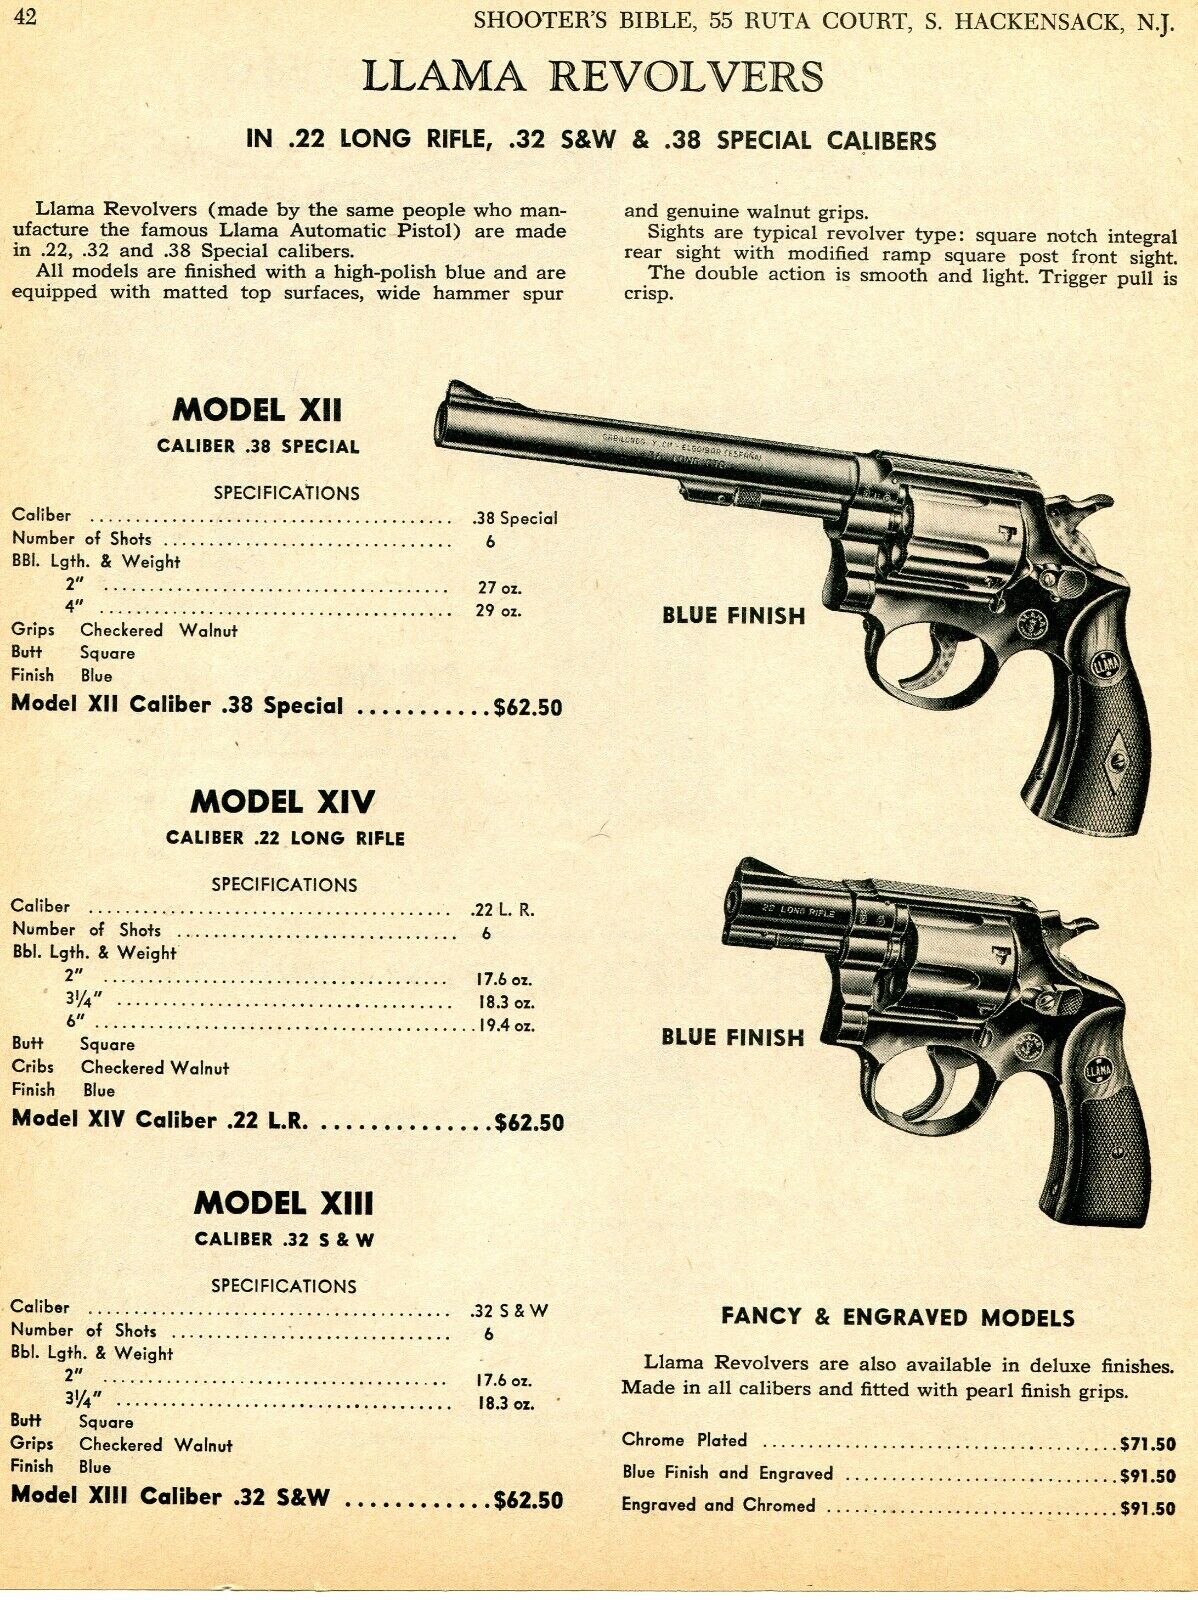 SLIKA 5. Nekadanji katalog za ameriko trite, kada su Llama revolveri bili na vrhuncu popularnosti.jpg